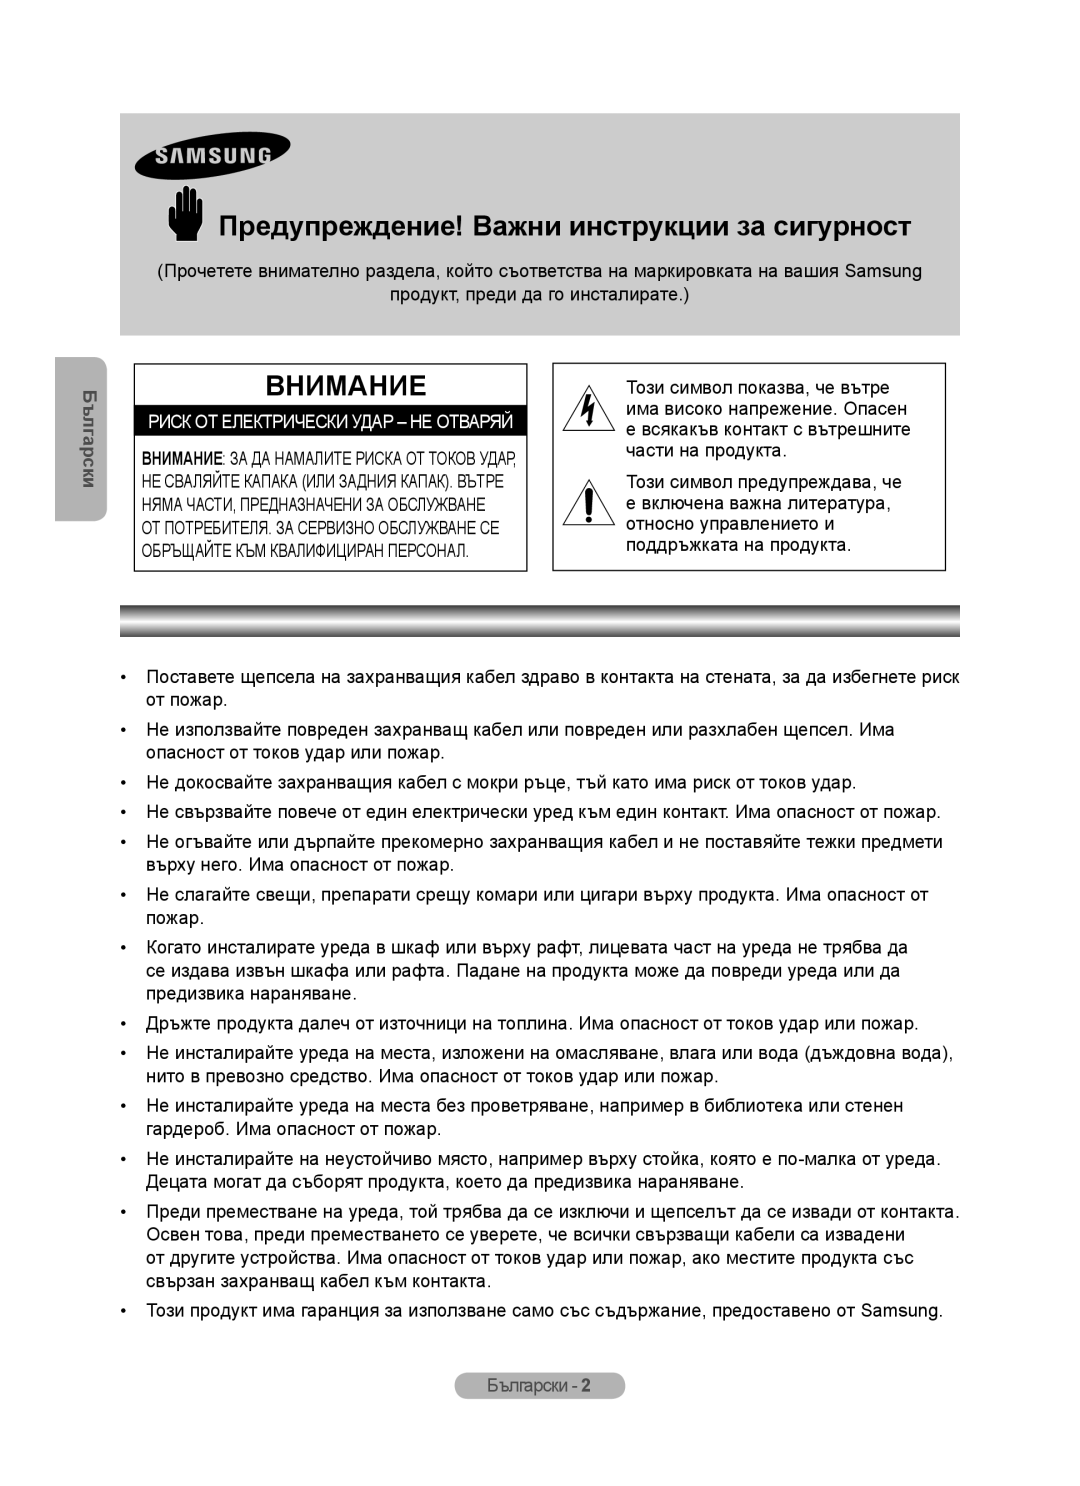 Samsung MR-16SB2 manual Предупреждение! Важни инструкции за сигурност, Внимание, Български 